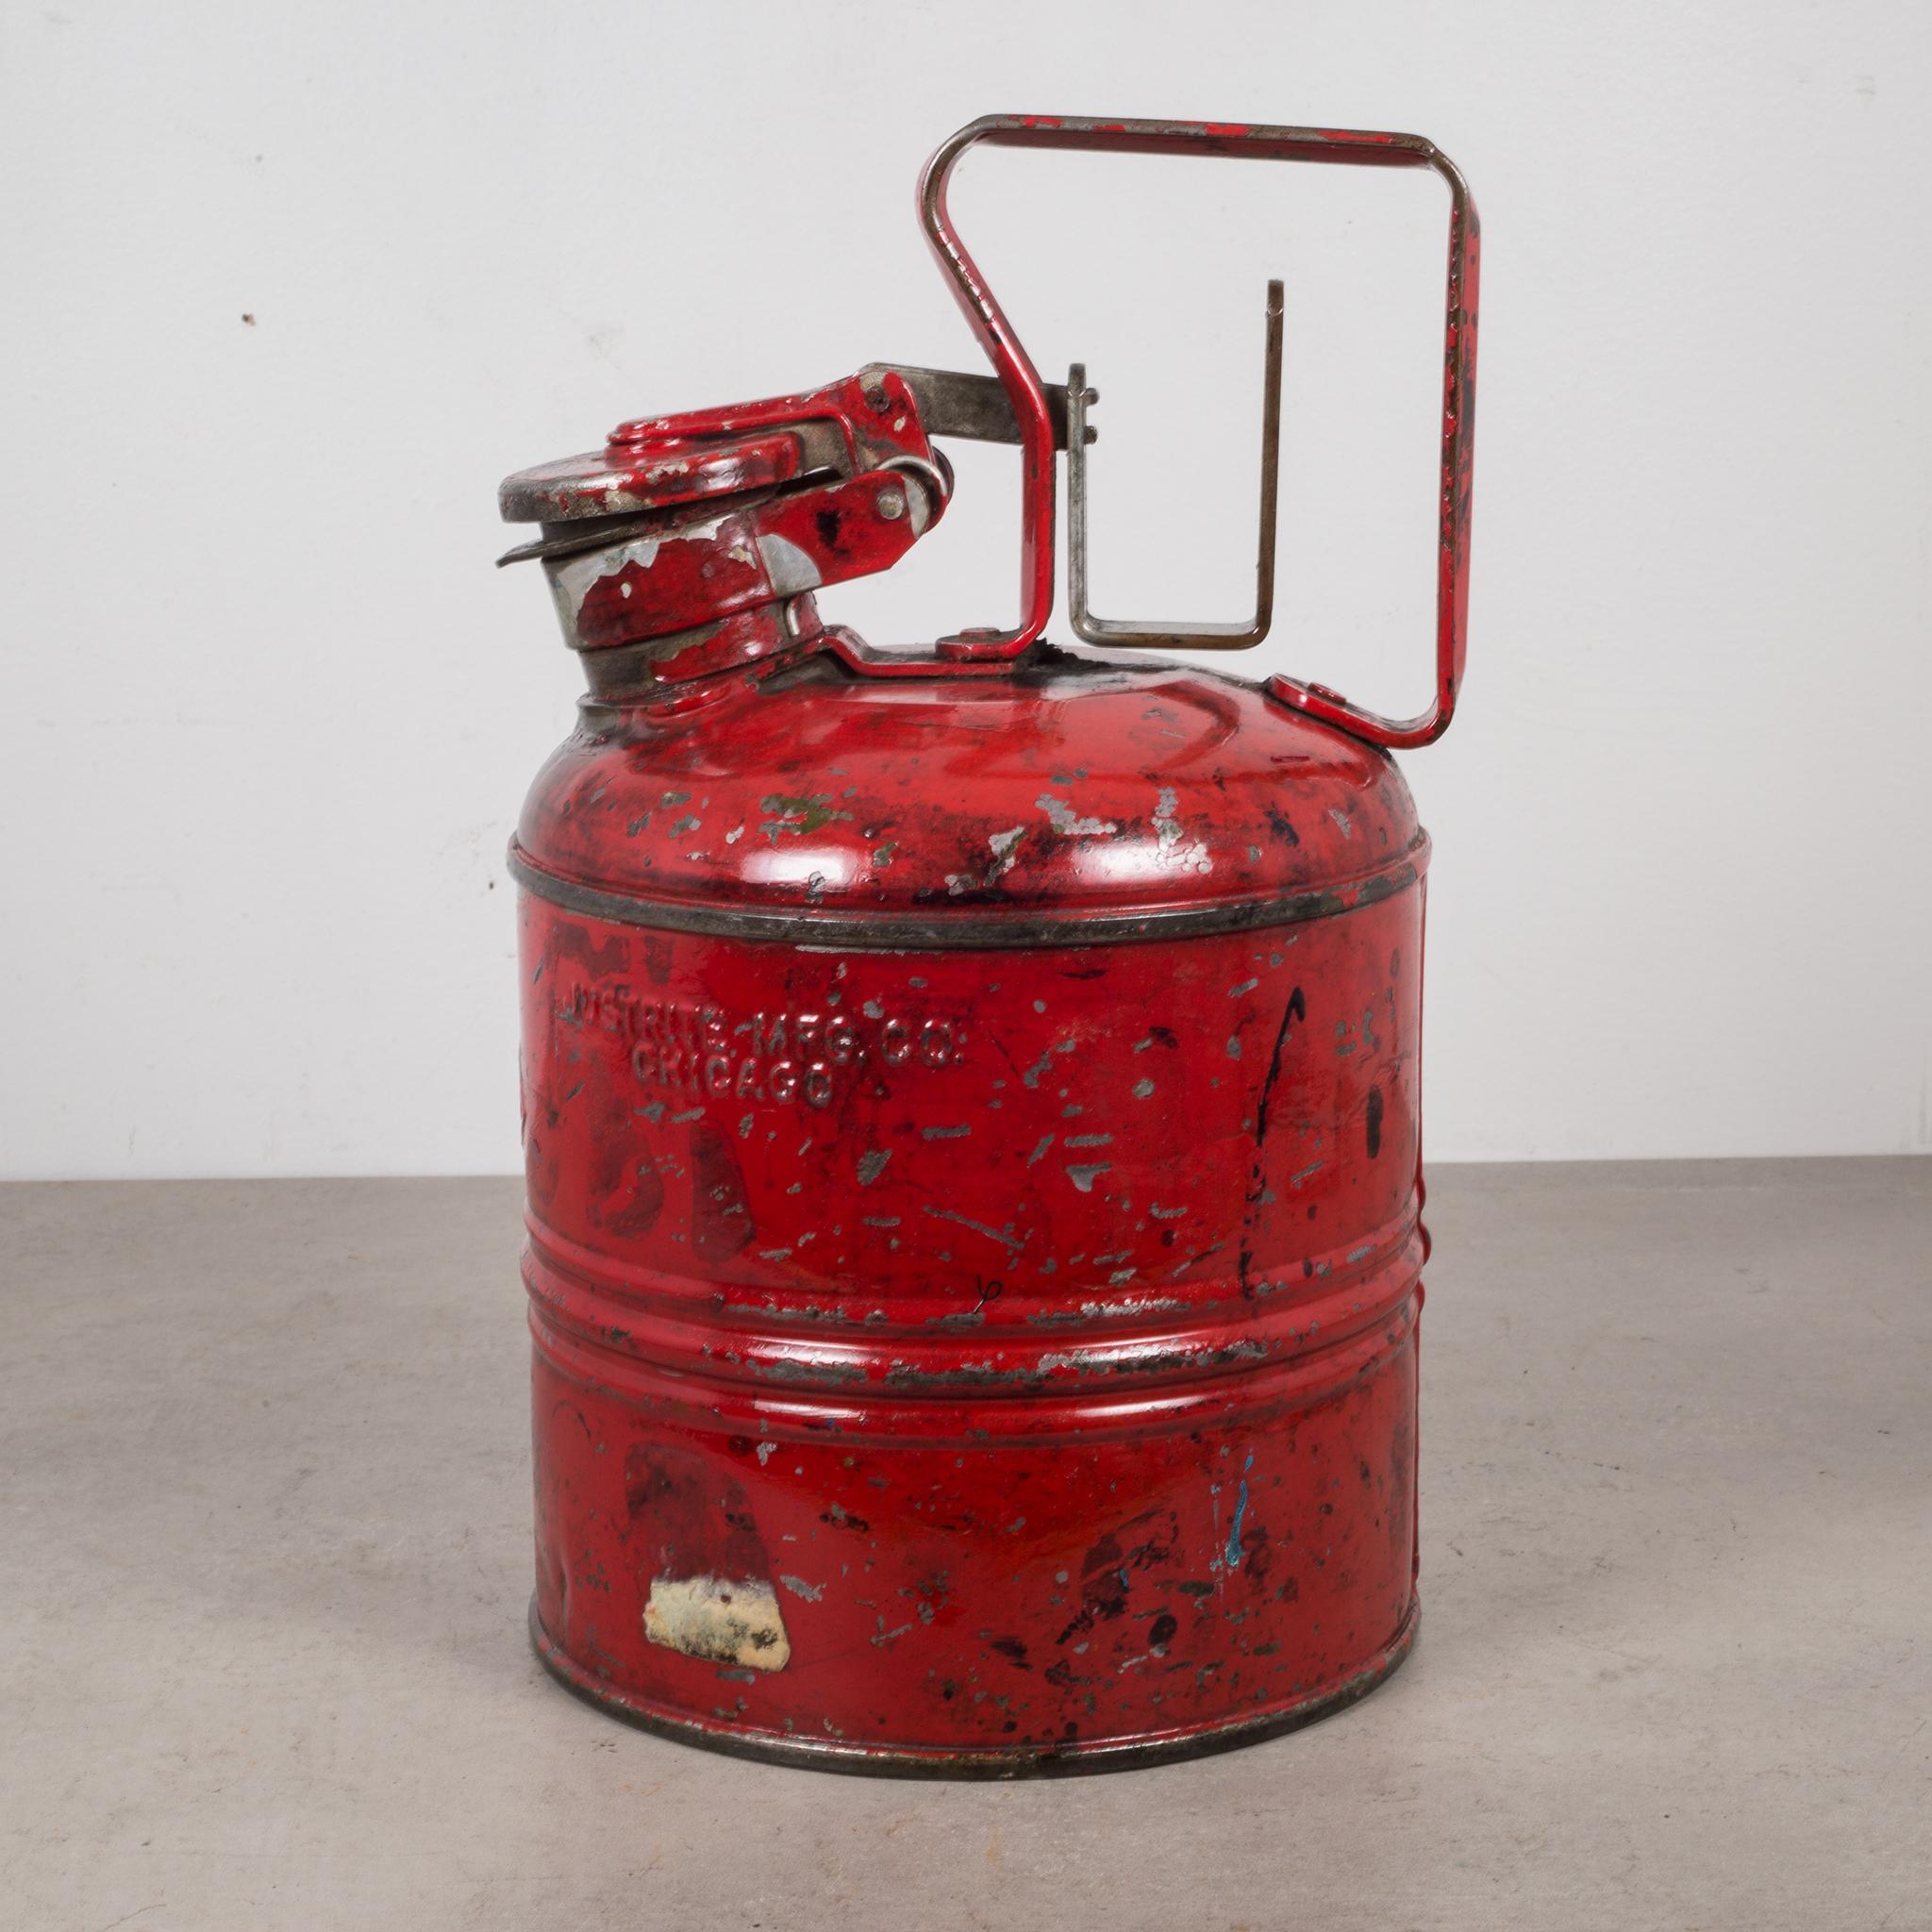 Vintage Safety Gas Can, circa 1940 1